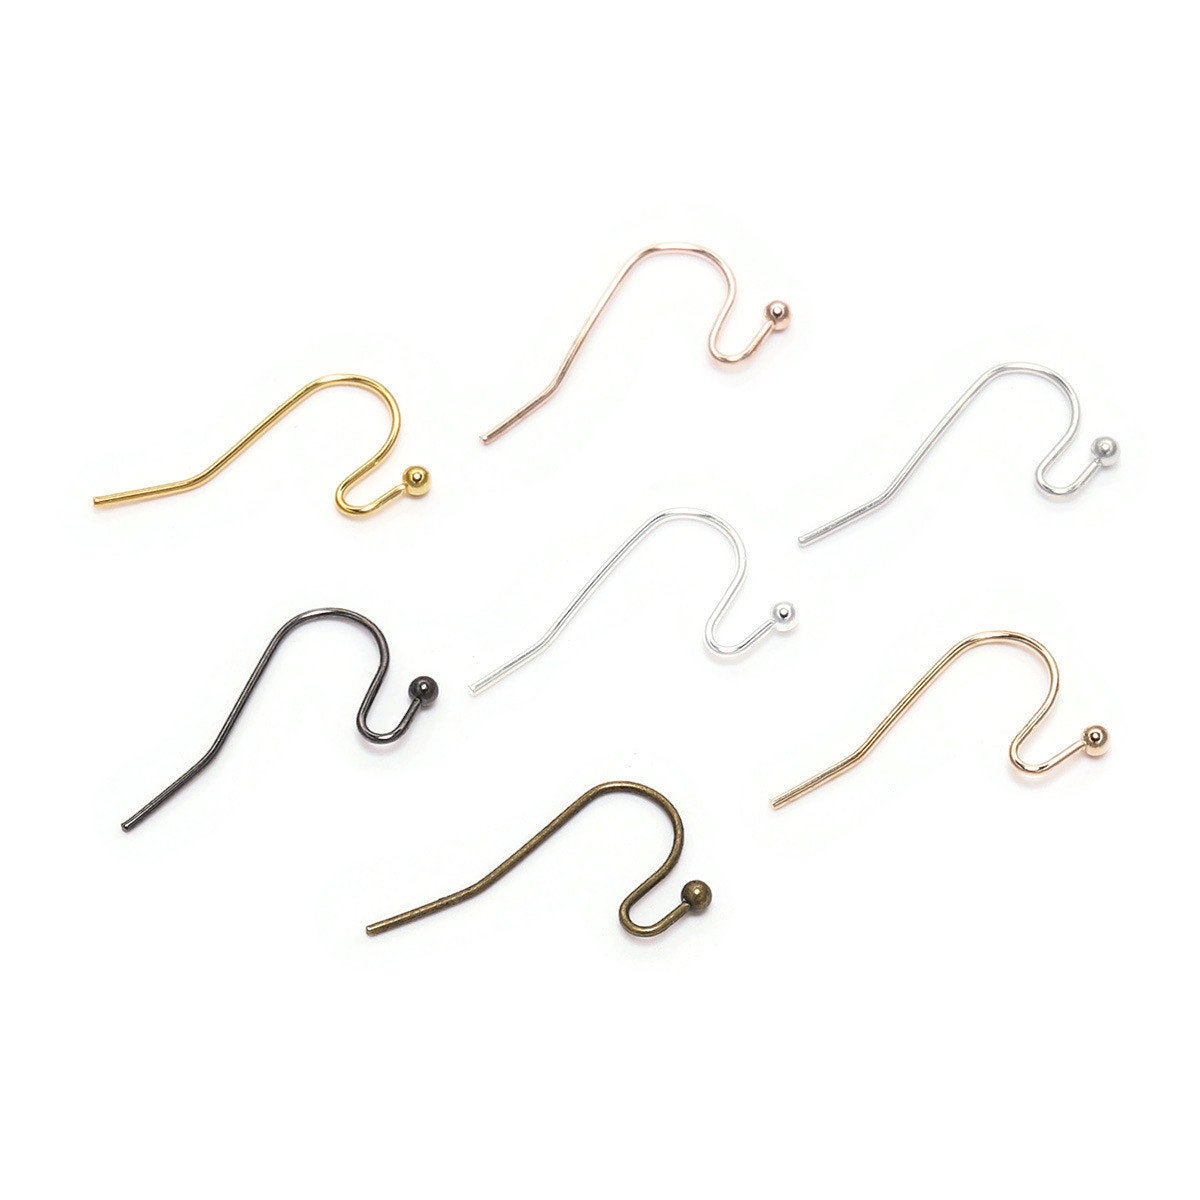 100 brass earring hooks - Nickel free earwire - Gold, Silver, Bronze, Gunmetal